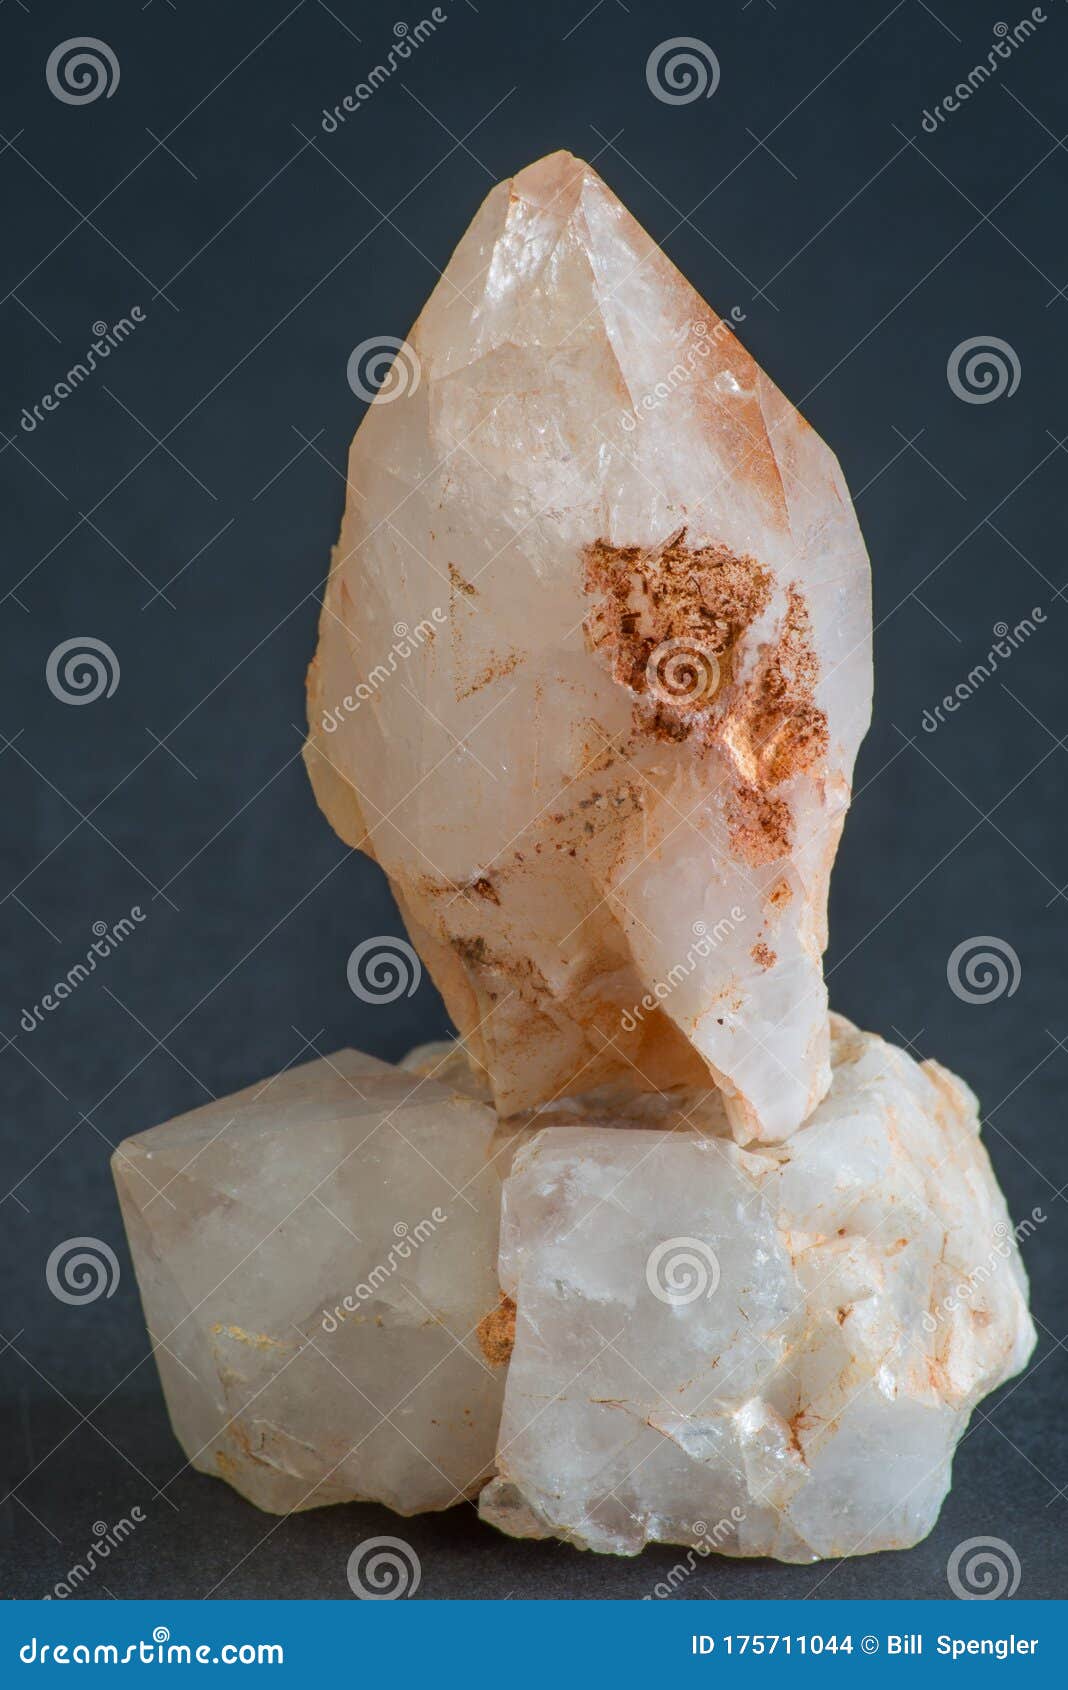 a pair of rough quartz crystals